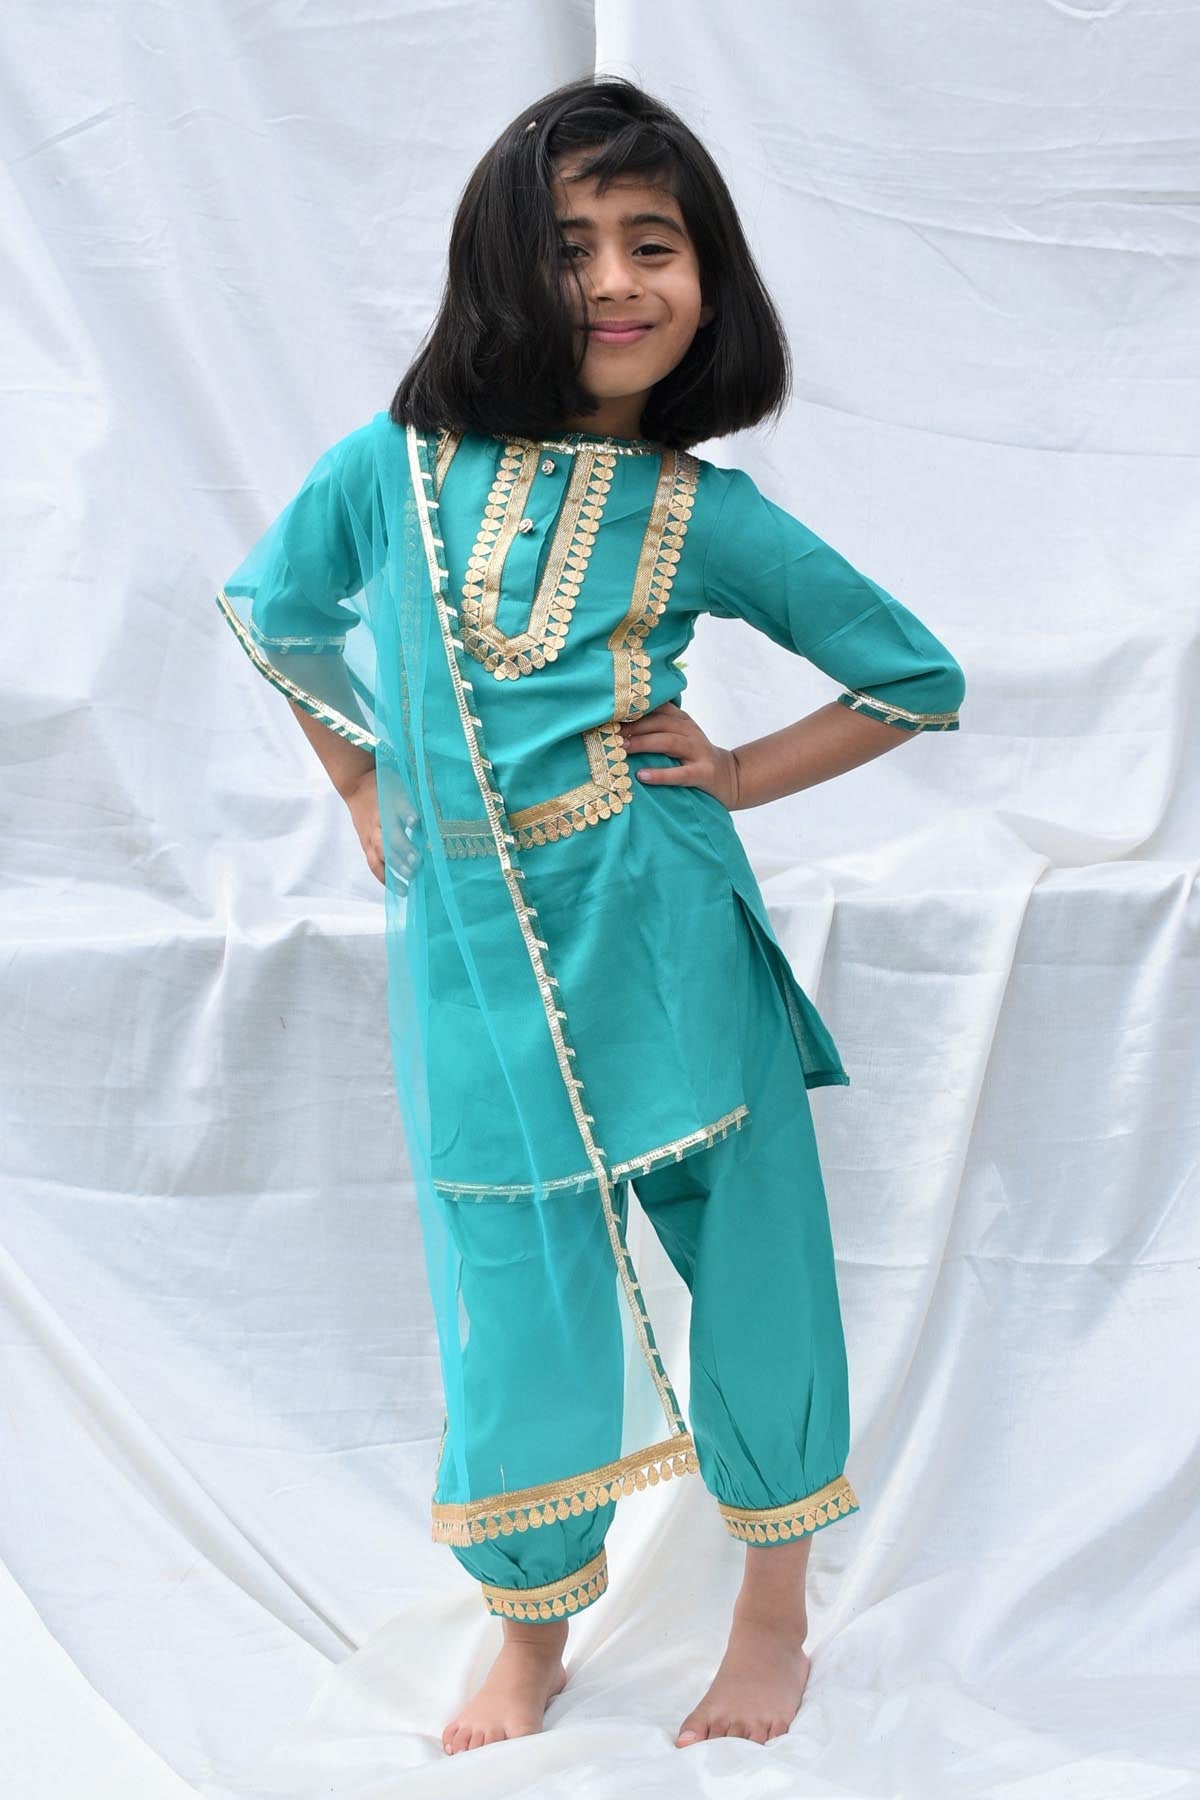 Designer ViYa Blue Contrast Lace Embellished Kurta Set For Kids Available online at ScrollnShops